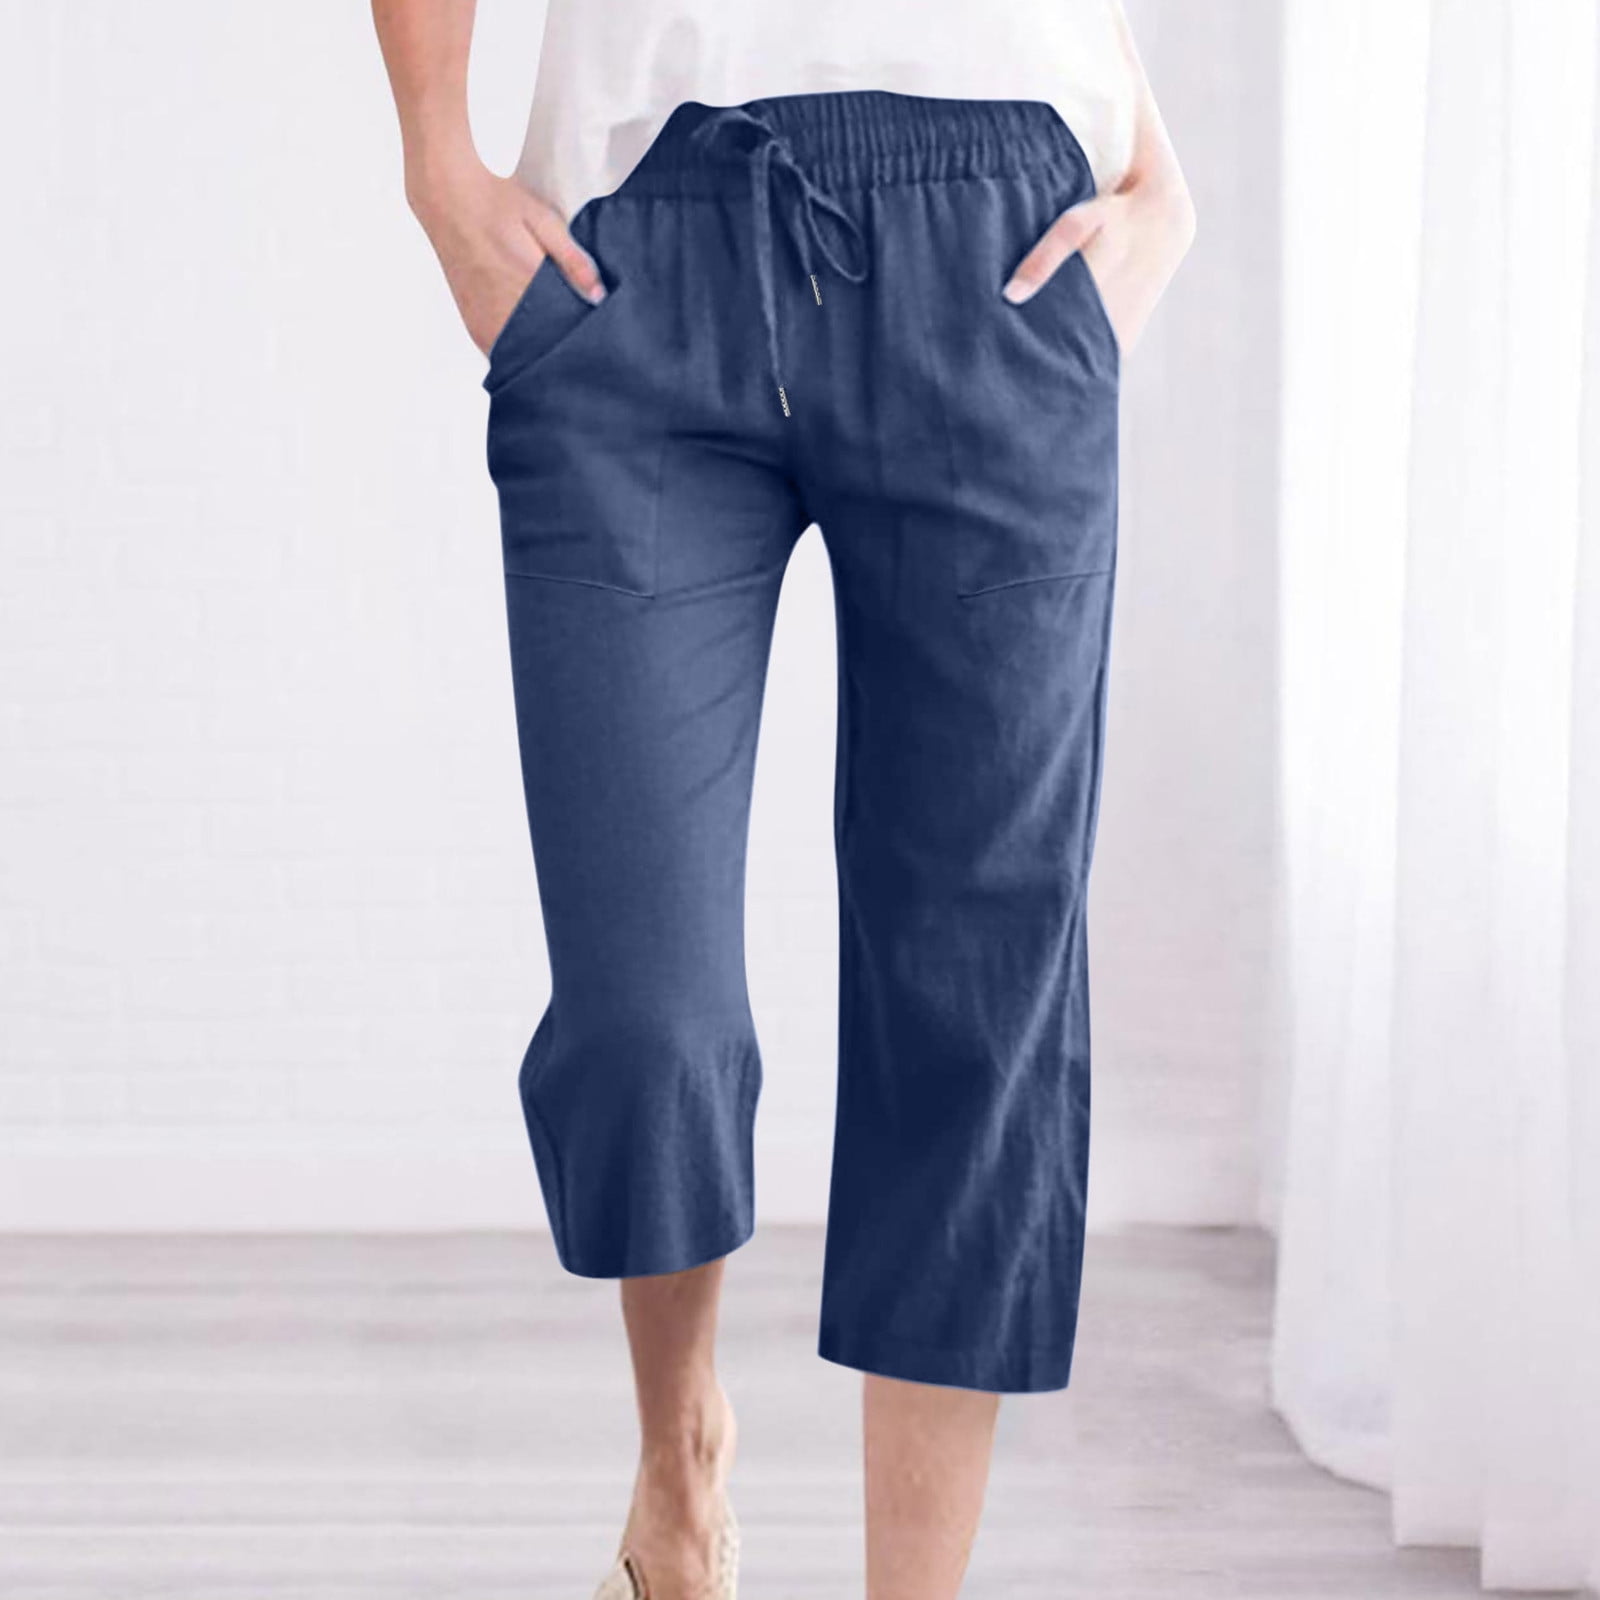 Women's Cotton Linen Capri Pants Sale Plus Size Casual